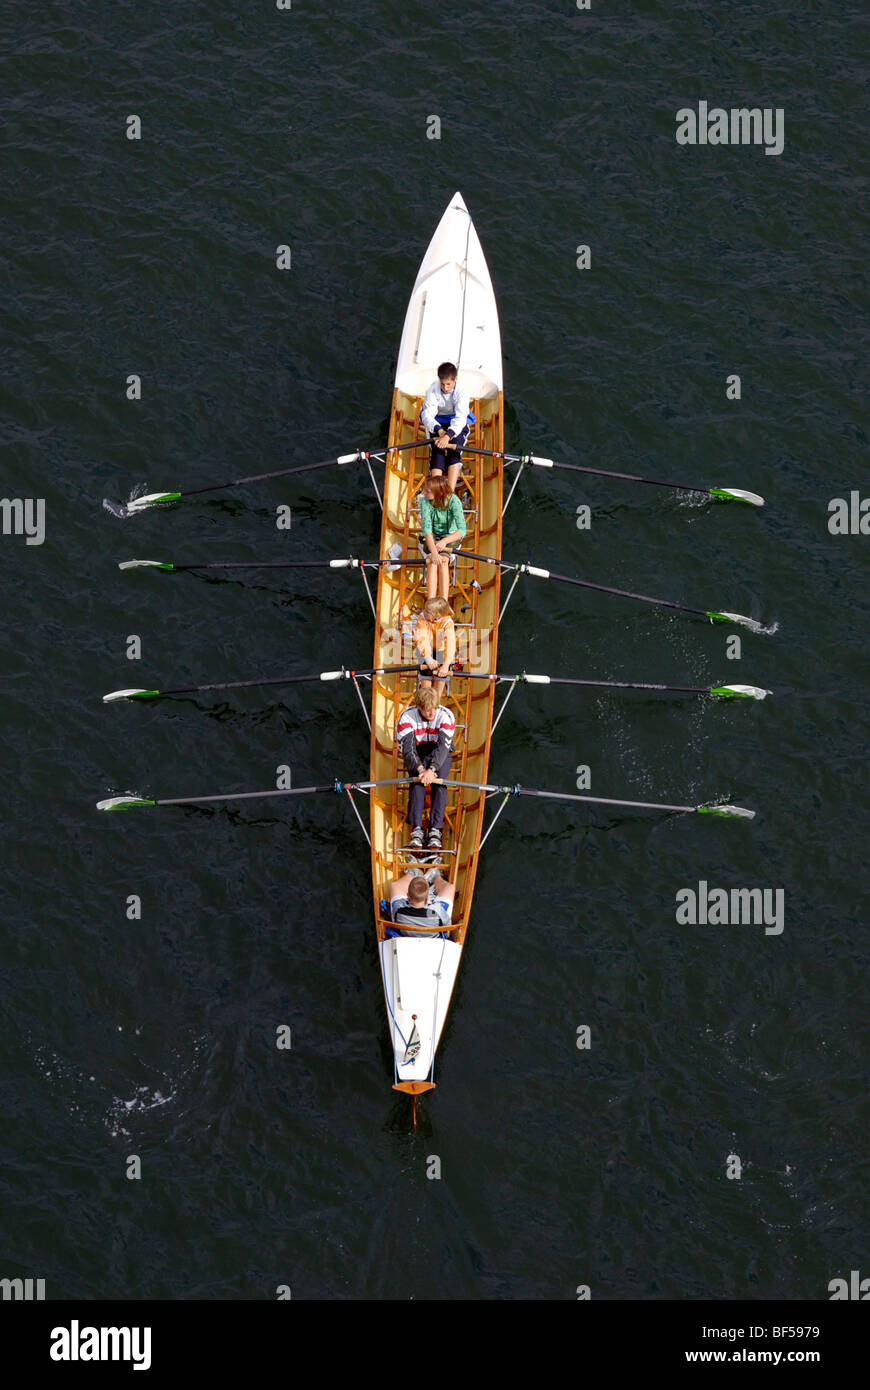 Sport acquatici, doppio coxed fours, giovani canottieri in azione Foto Stock